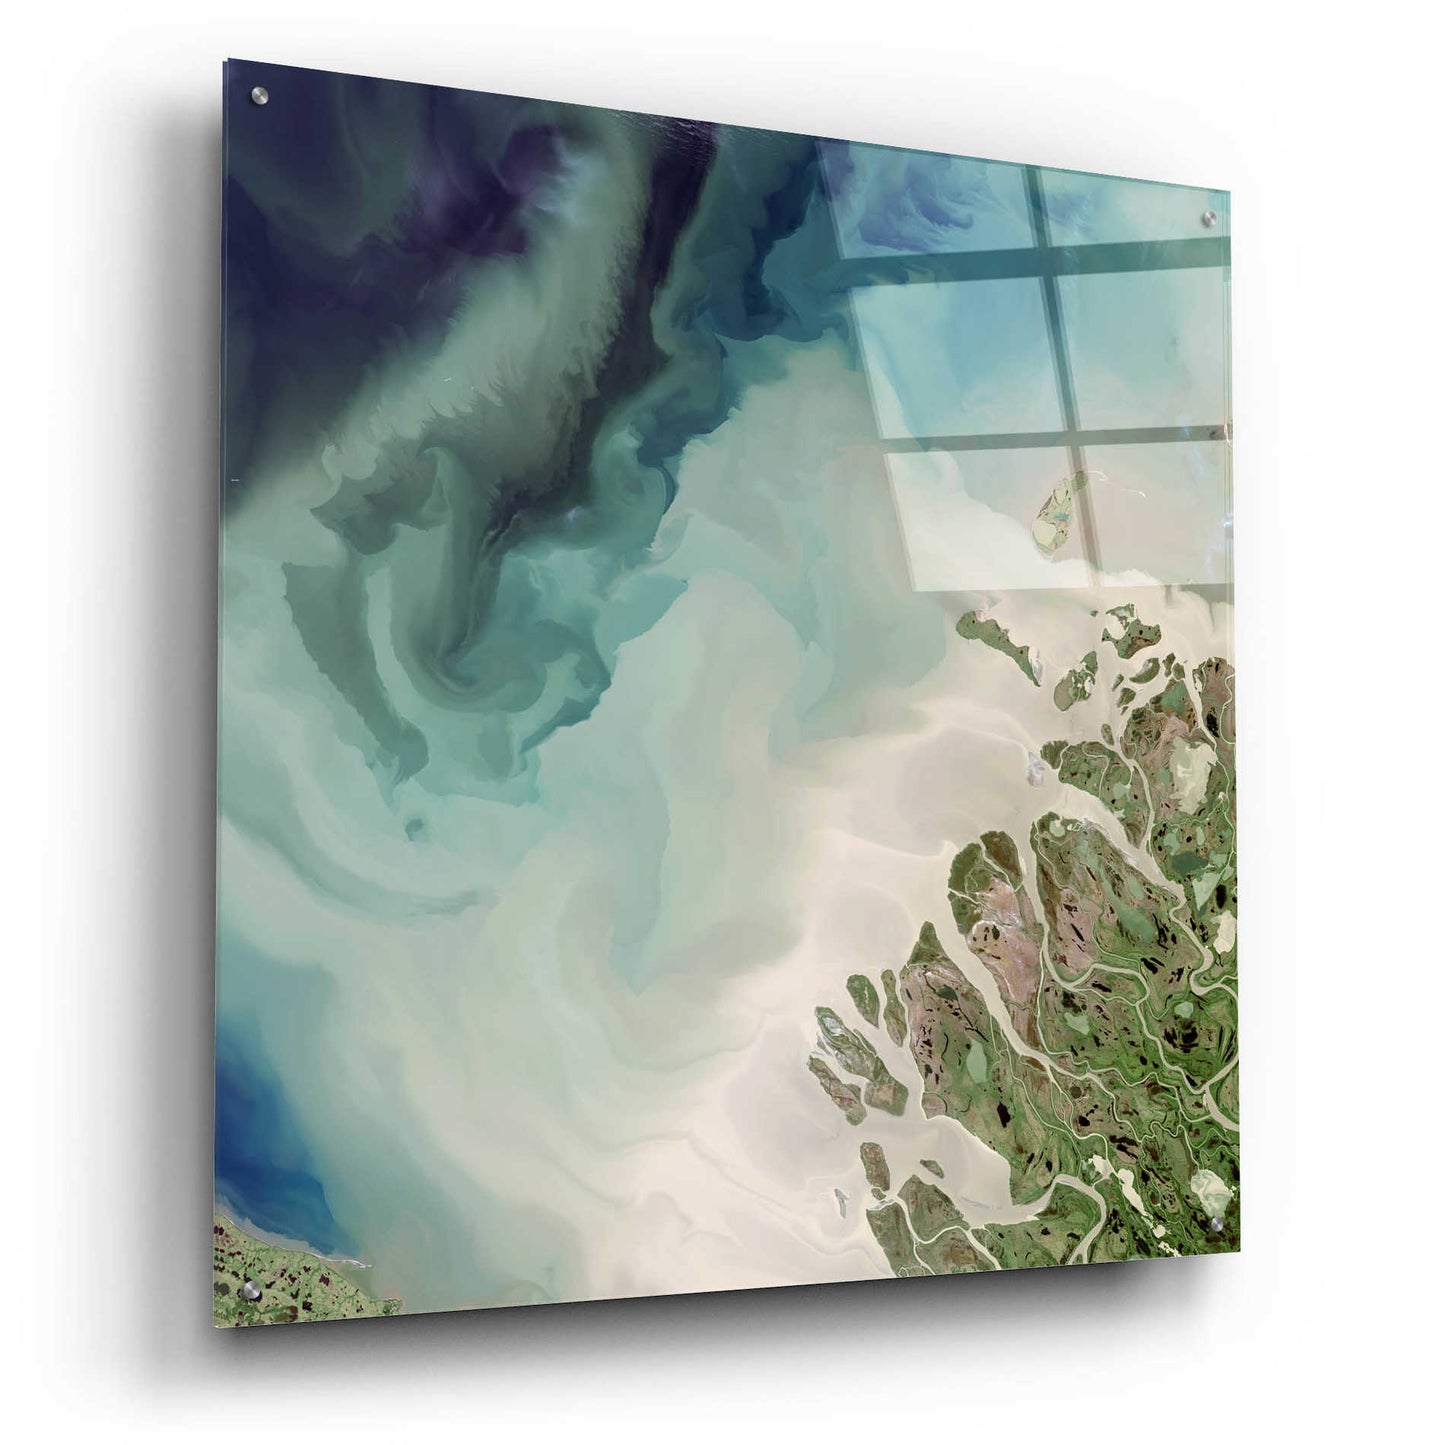 Epic Art 'Earth as Art: Mackenzie Meets Beaufort,' Acrylic Glass Wall Art,36x36